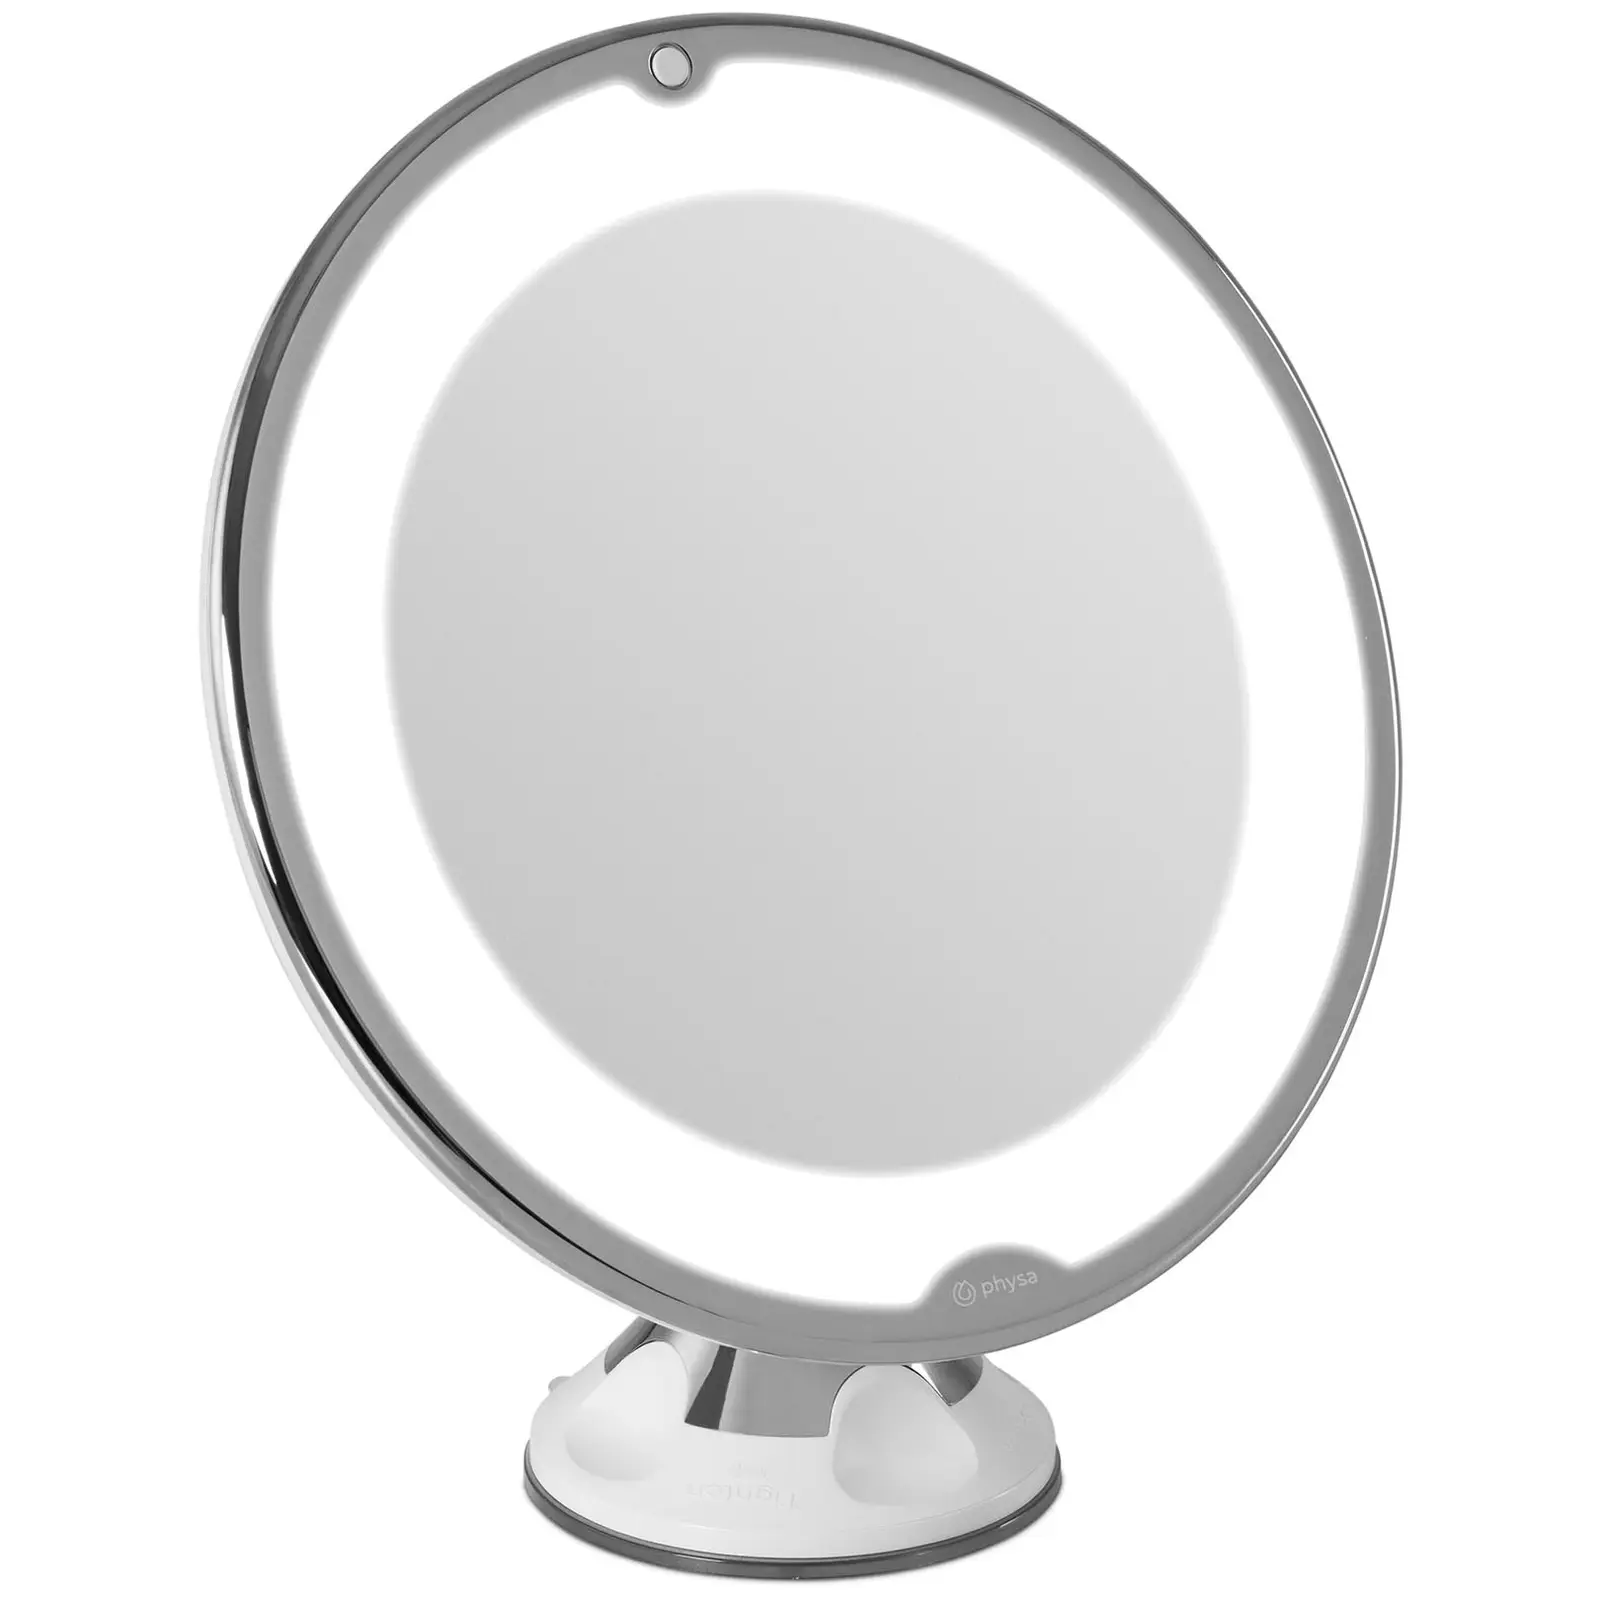 Espelho de maquilhagem - LED - Ø20,5 cm - ampliação de 10x